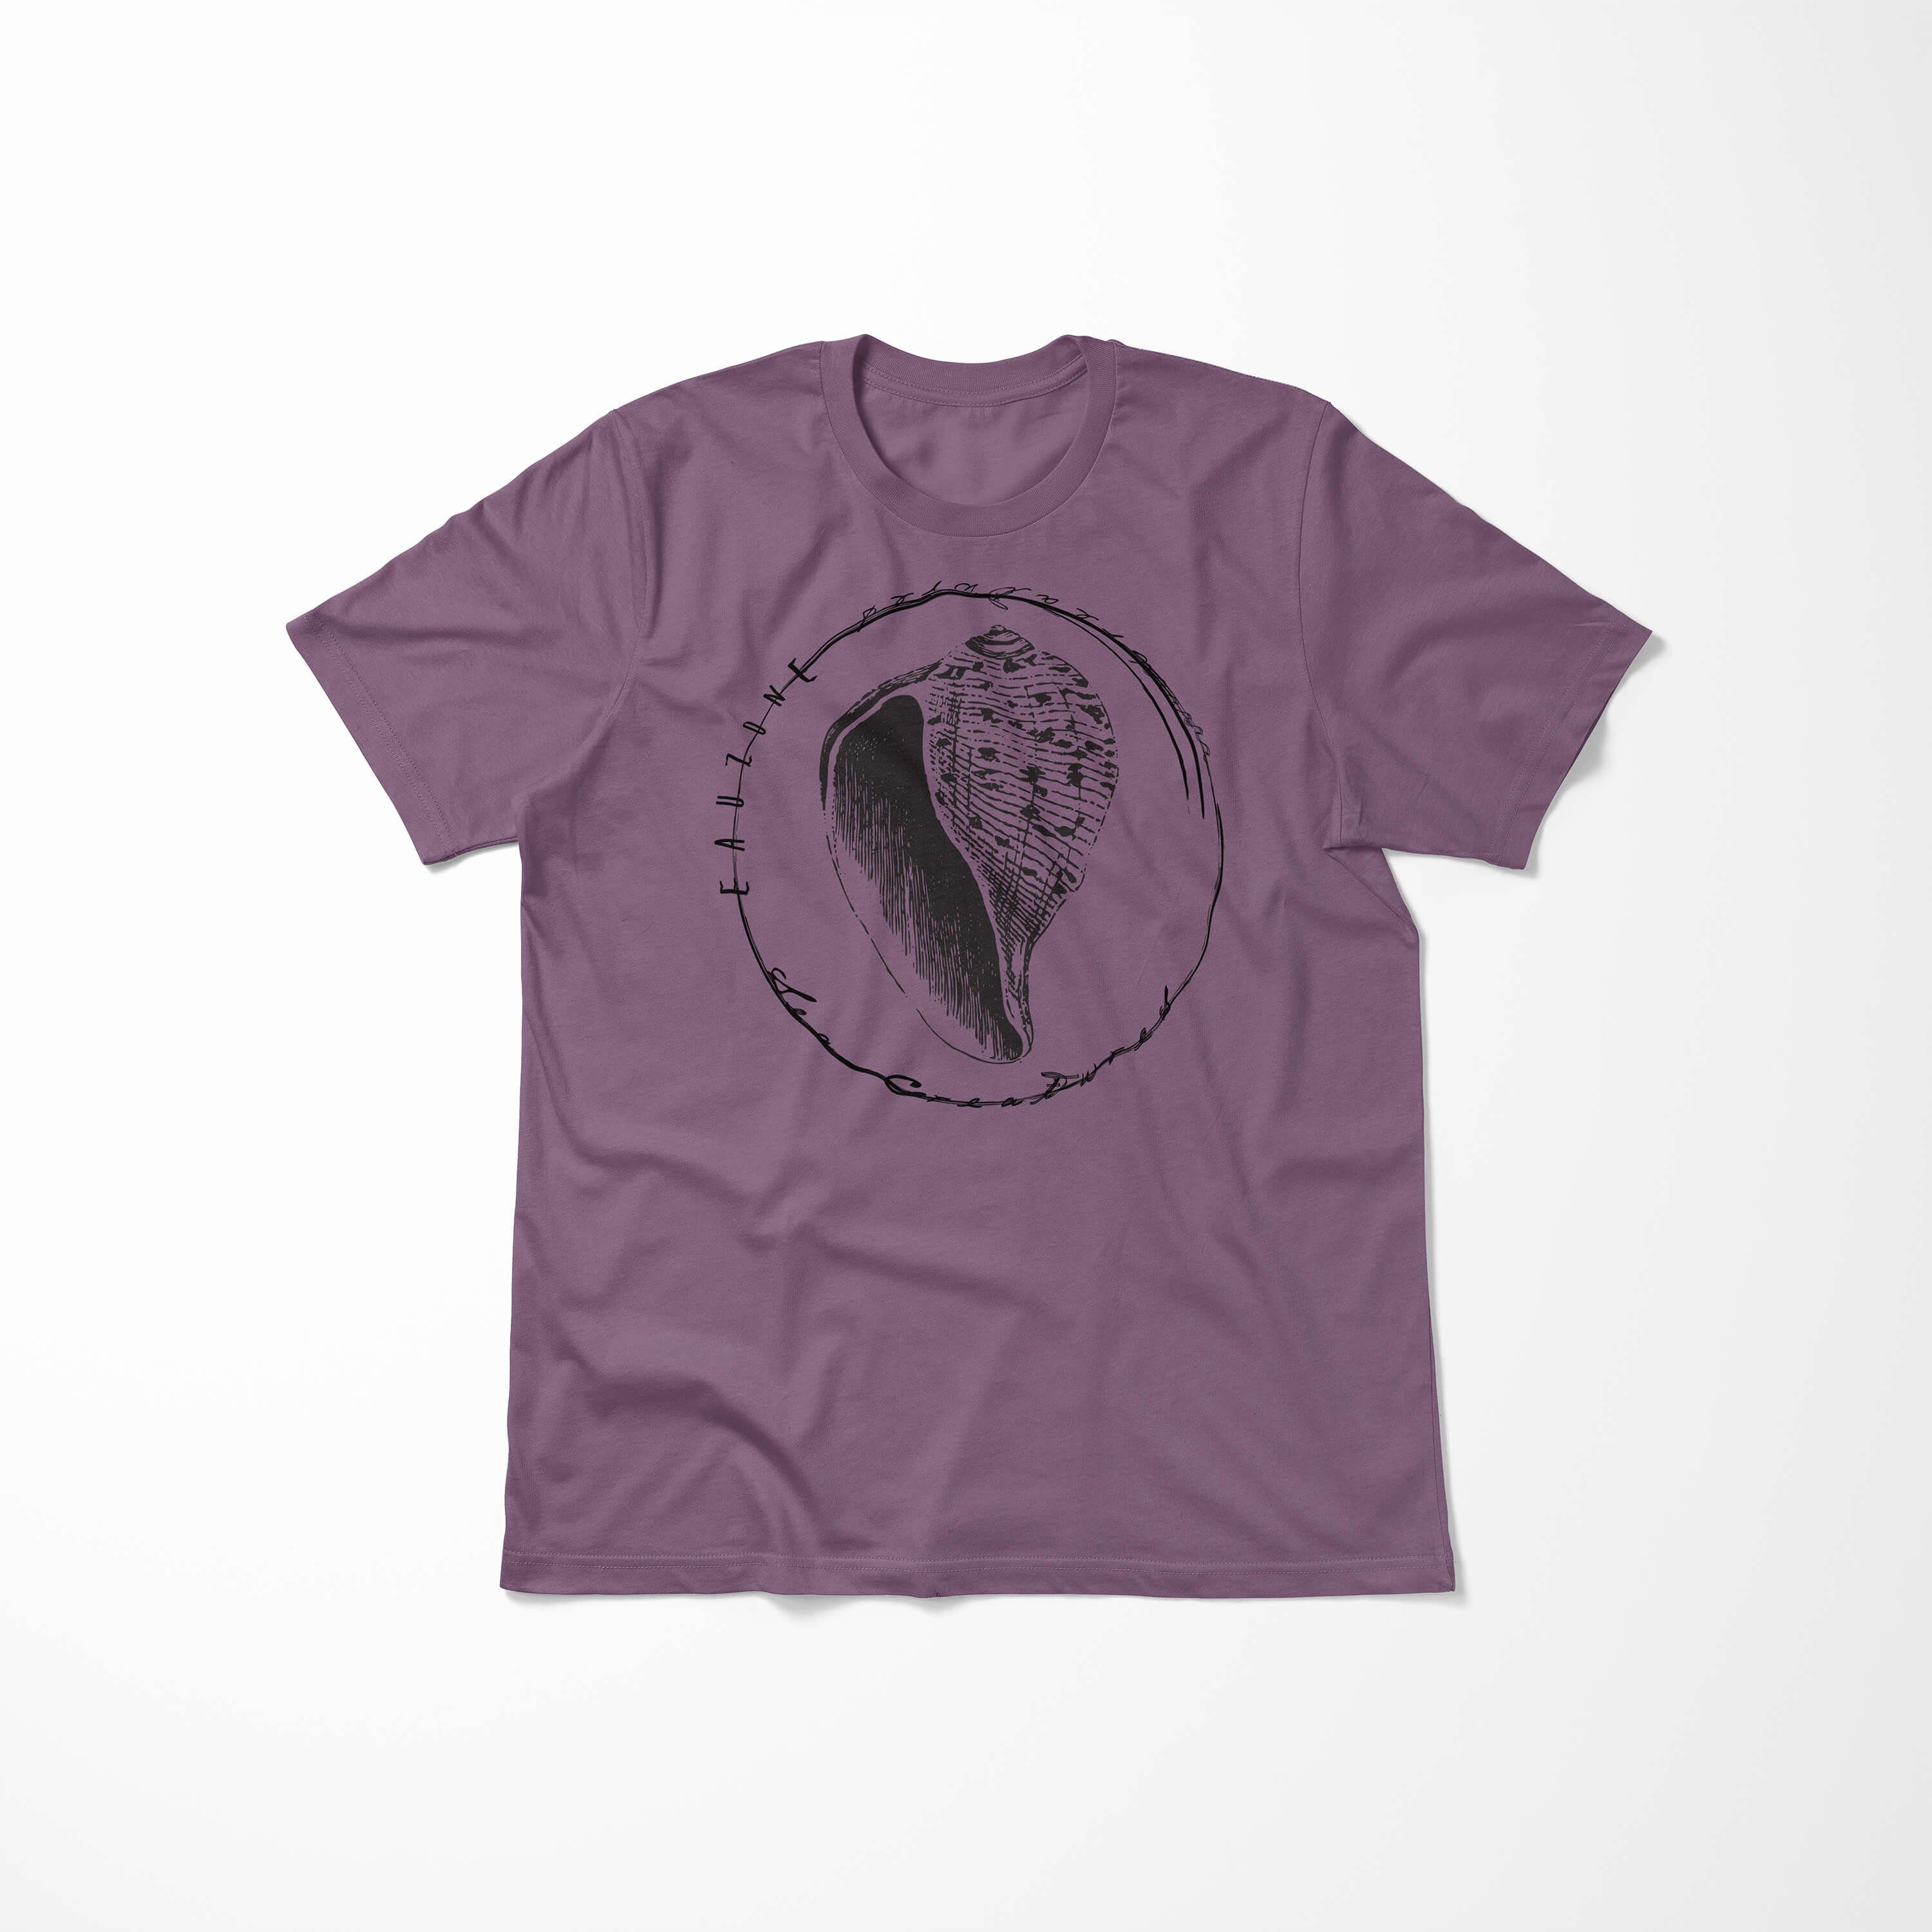 Sea - Sea Struktur Art / Creatures, Sinus und sportlicher Shiraz Serie: Fische T-Shirt Schnitt 057 feine Tiefsee T-Shirt